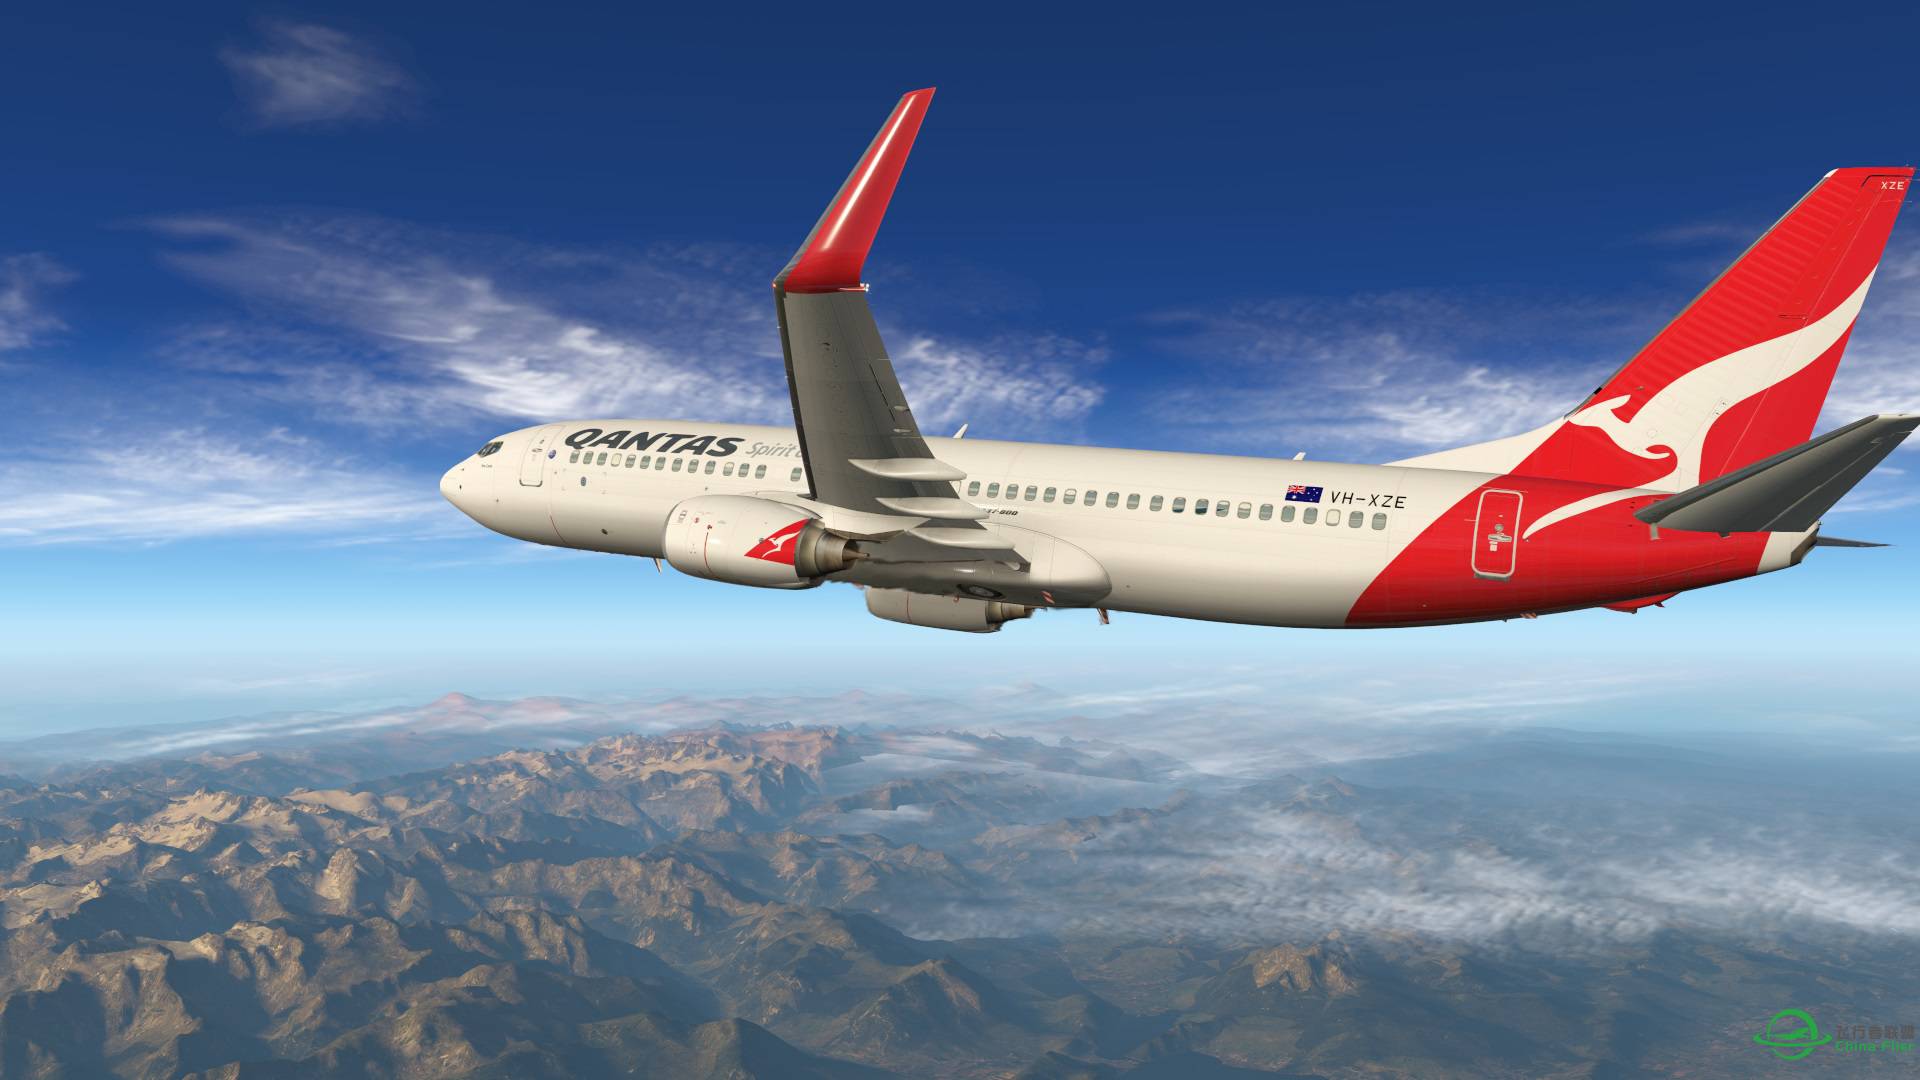 飞跃阿尔卑斯山 X-plane 11-1406 